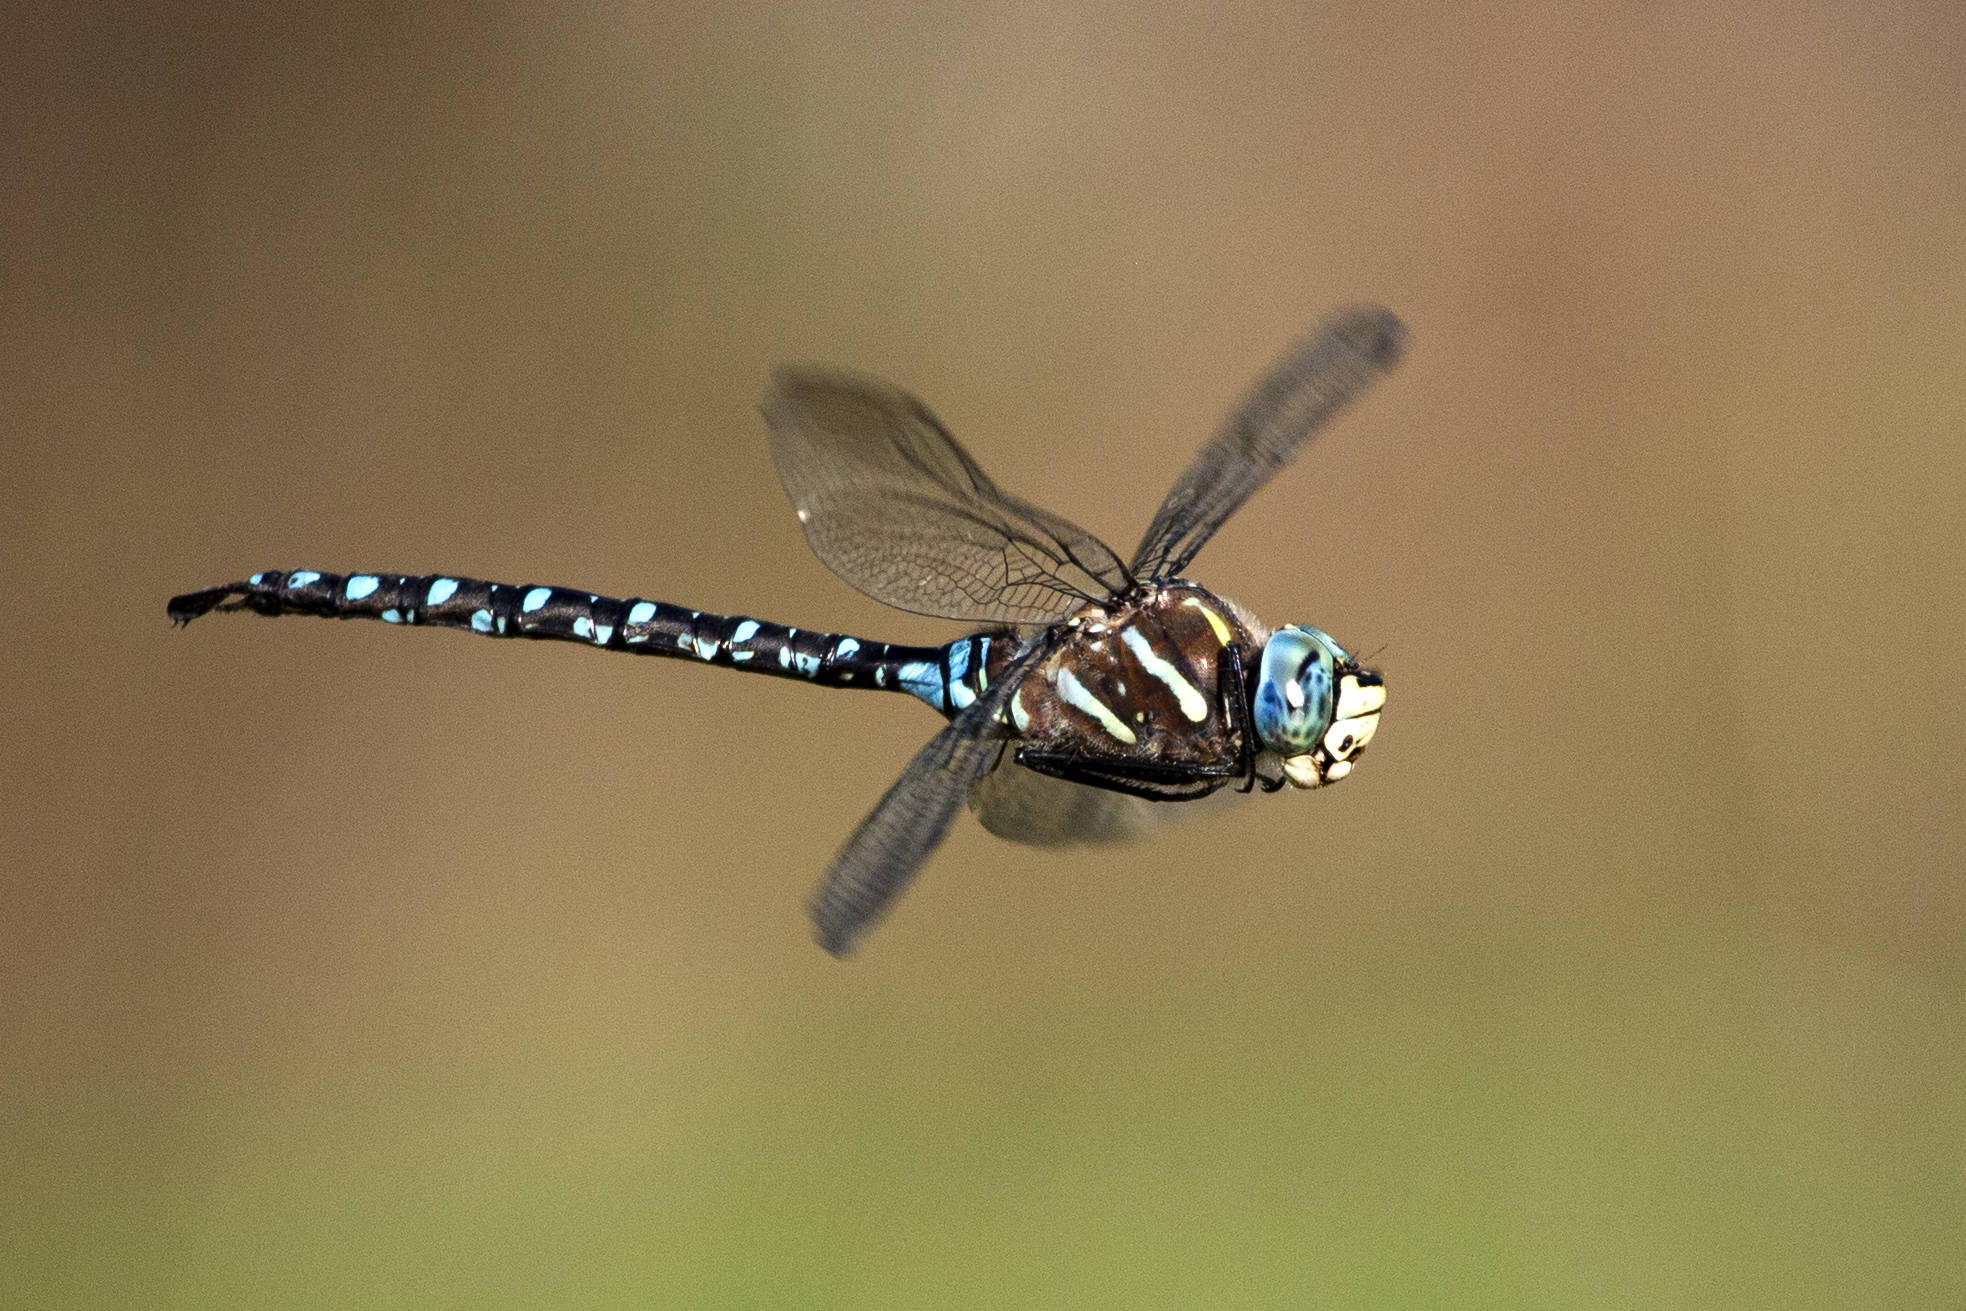 Dragonfly in Midair by Emily Matthiessen